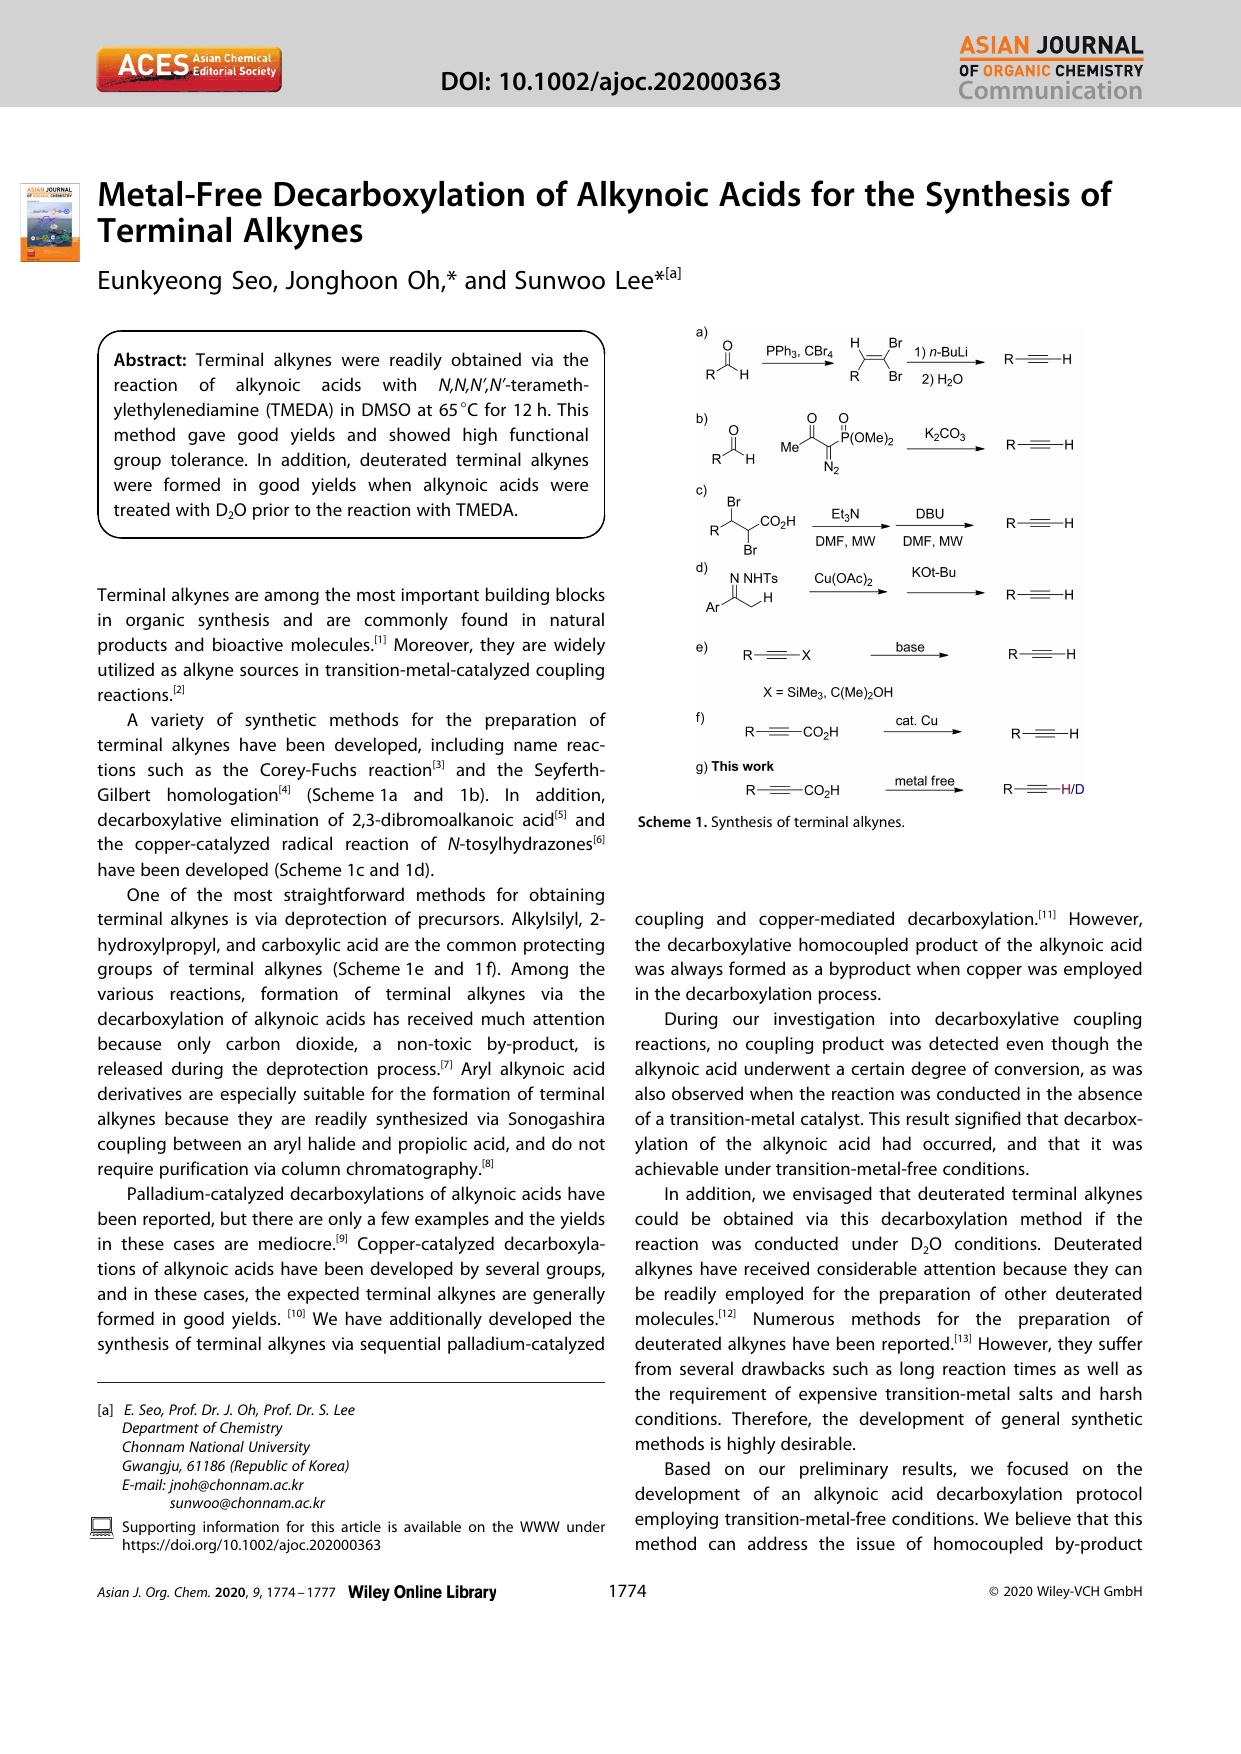 MetalâFree Decarboxylation of Alkynoic Acids for the Synthesis of Terminal Alkynes by Unknown